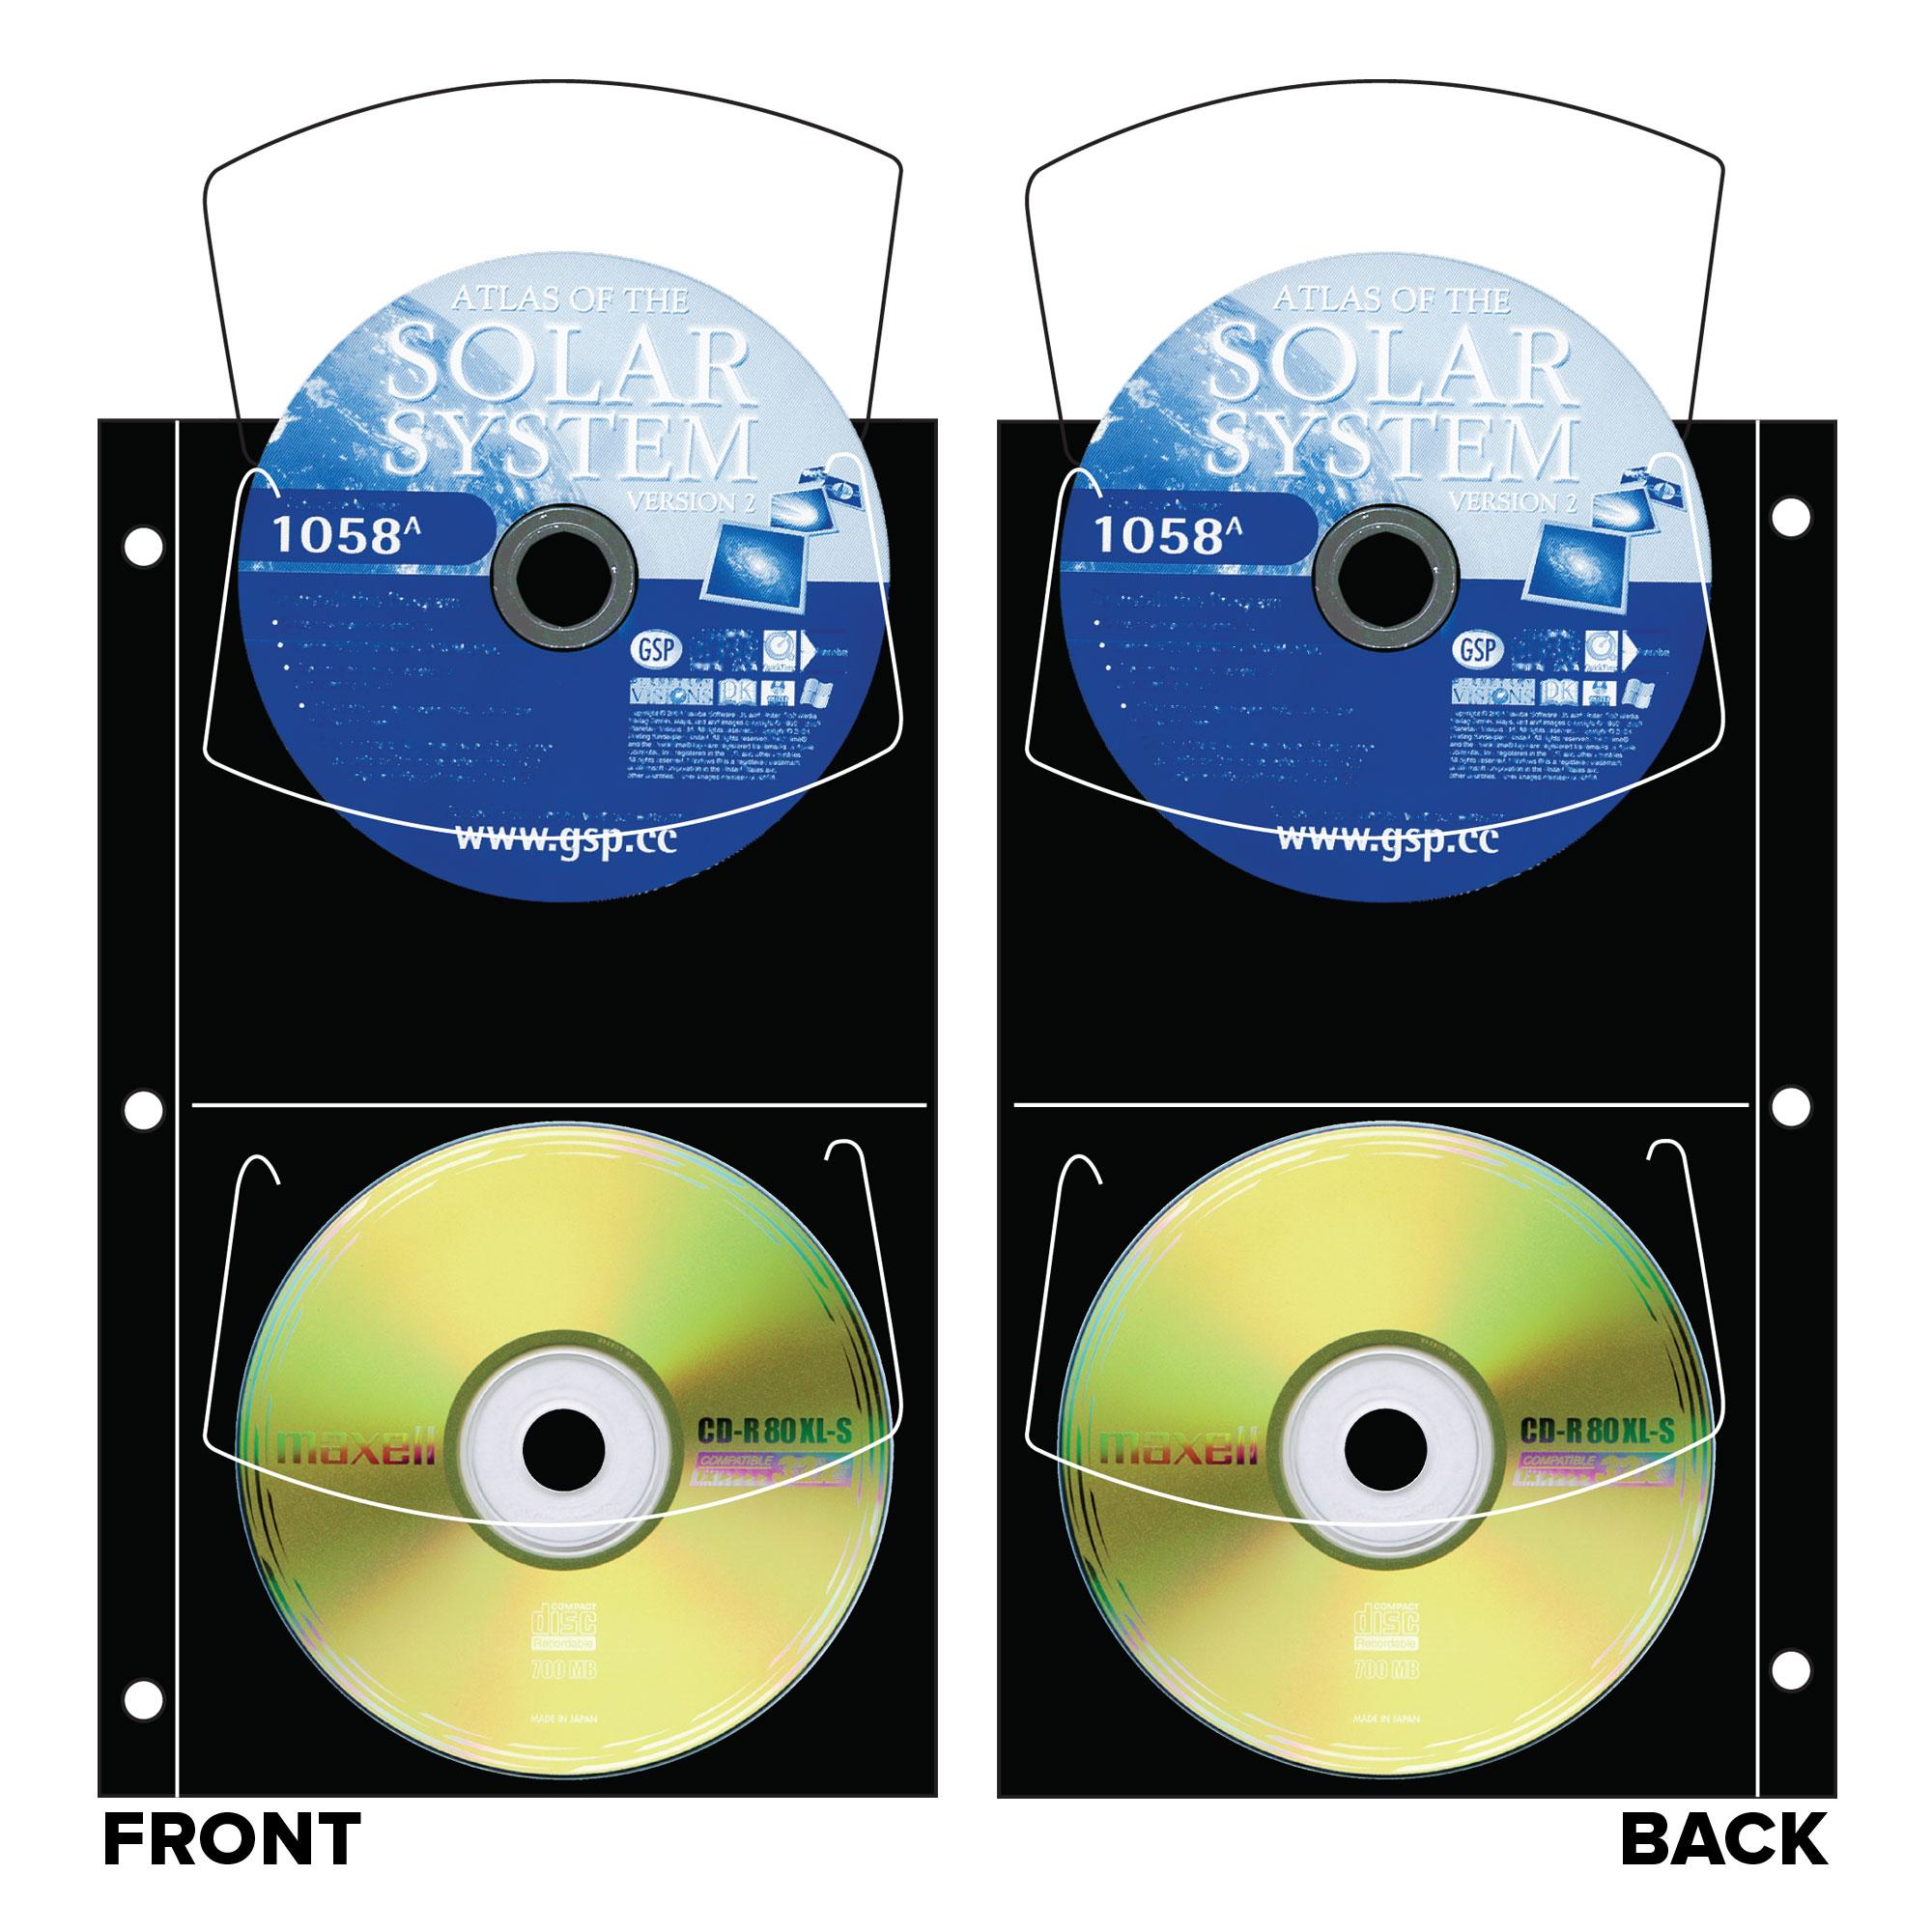 CD/DVD Archival Quartet refills Slimline (4 CDs)- Black pack of 10